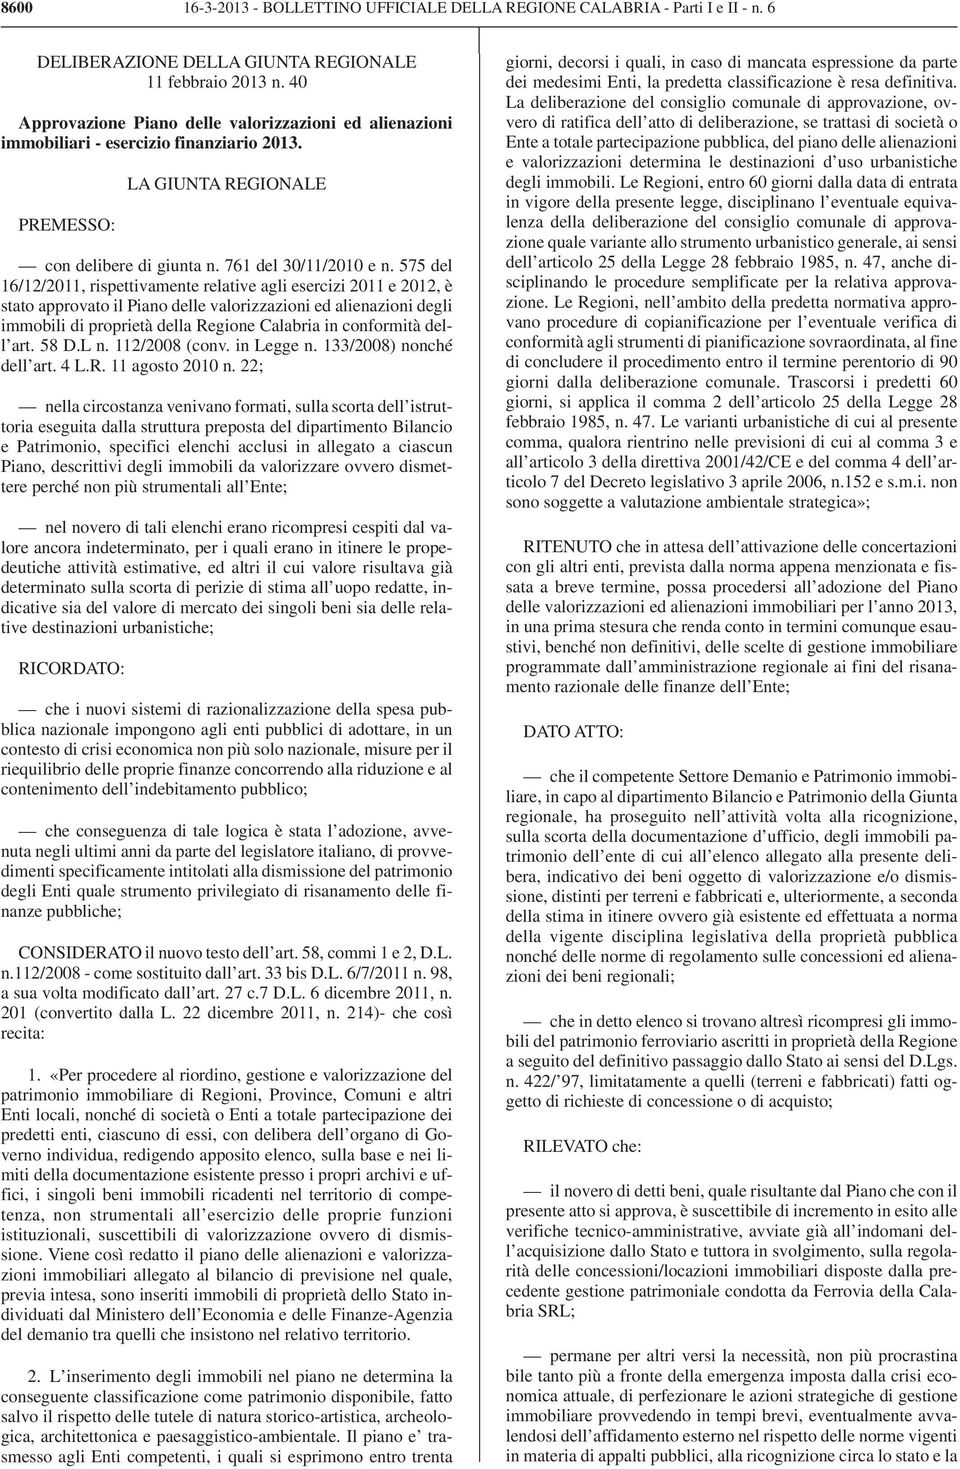 575 del 16/12/2011, rispettivamente relative agli esercizi 2011 e 2012, è stato approvato il Piano delle valorizzazioni ed alienazioni degli immobili di proprietà della Regione Calabria in conformità